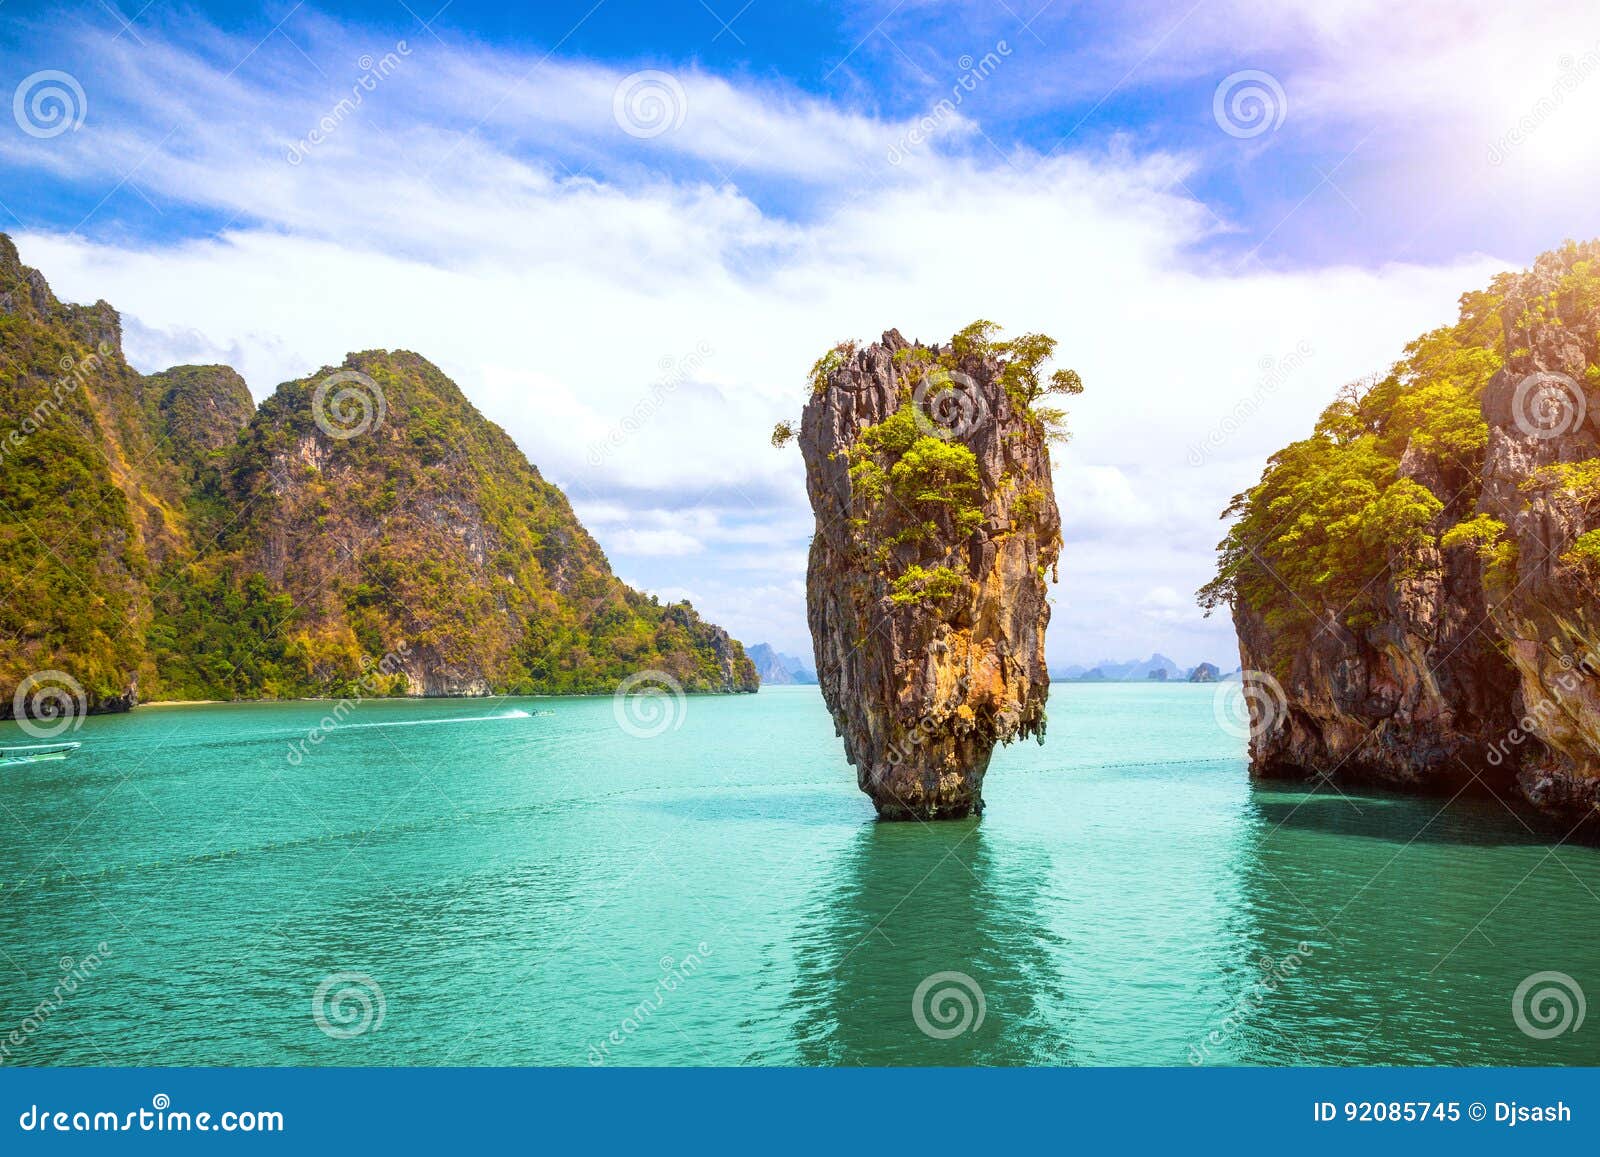 phuket thailand island